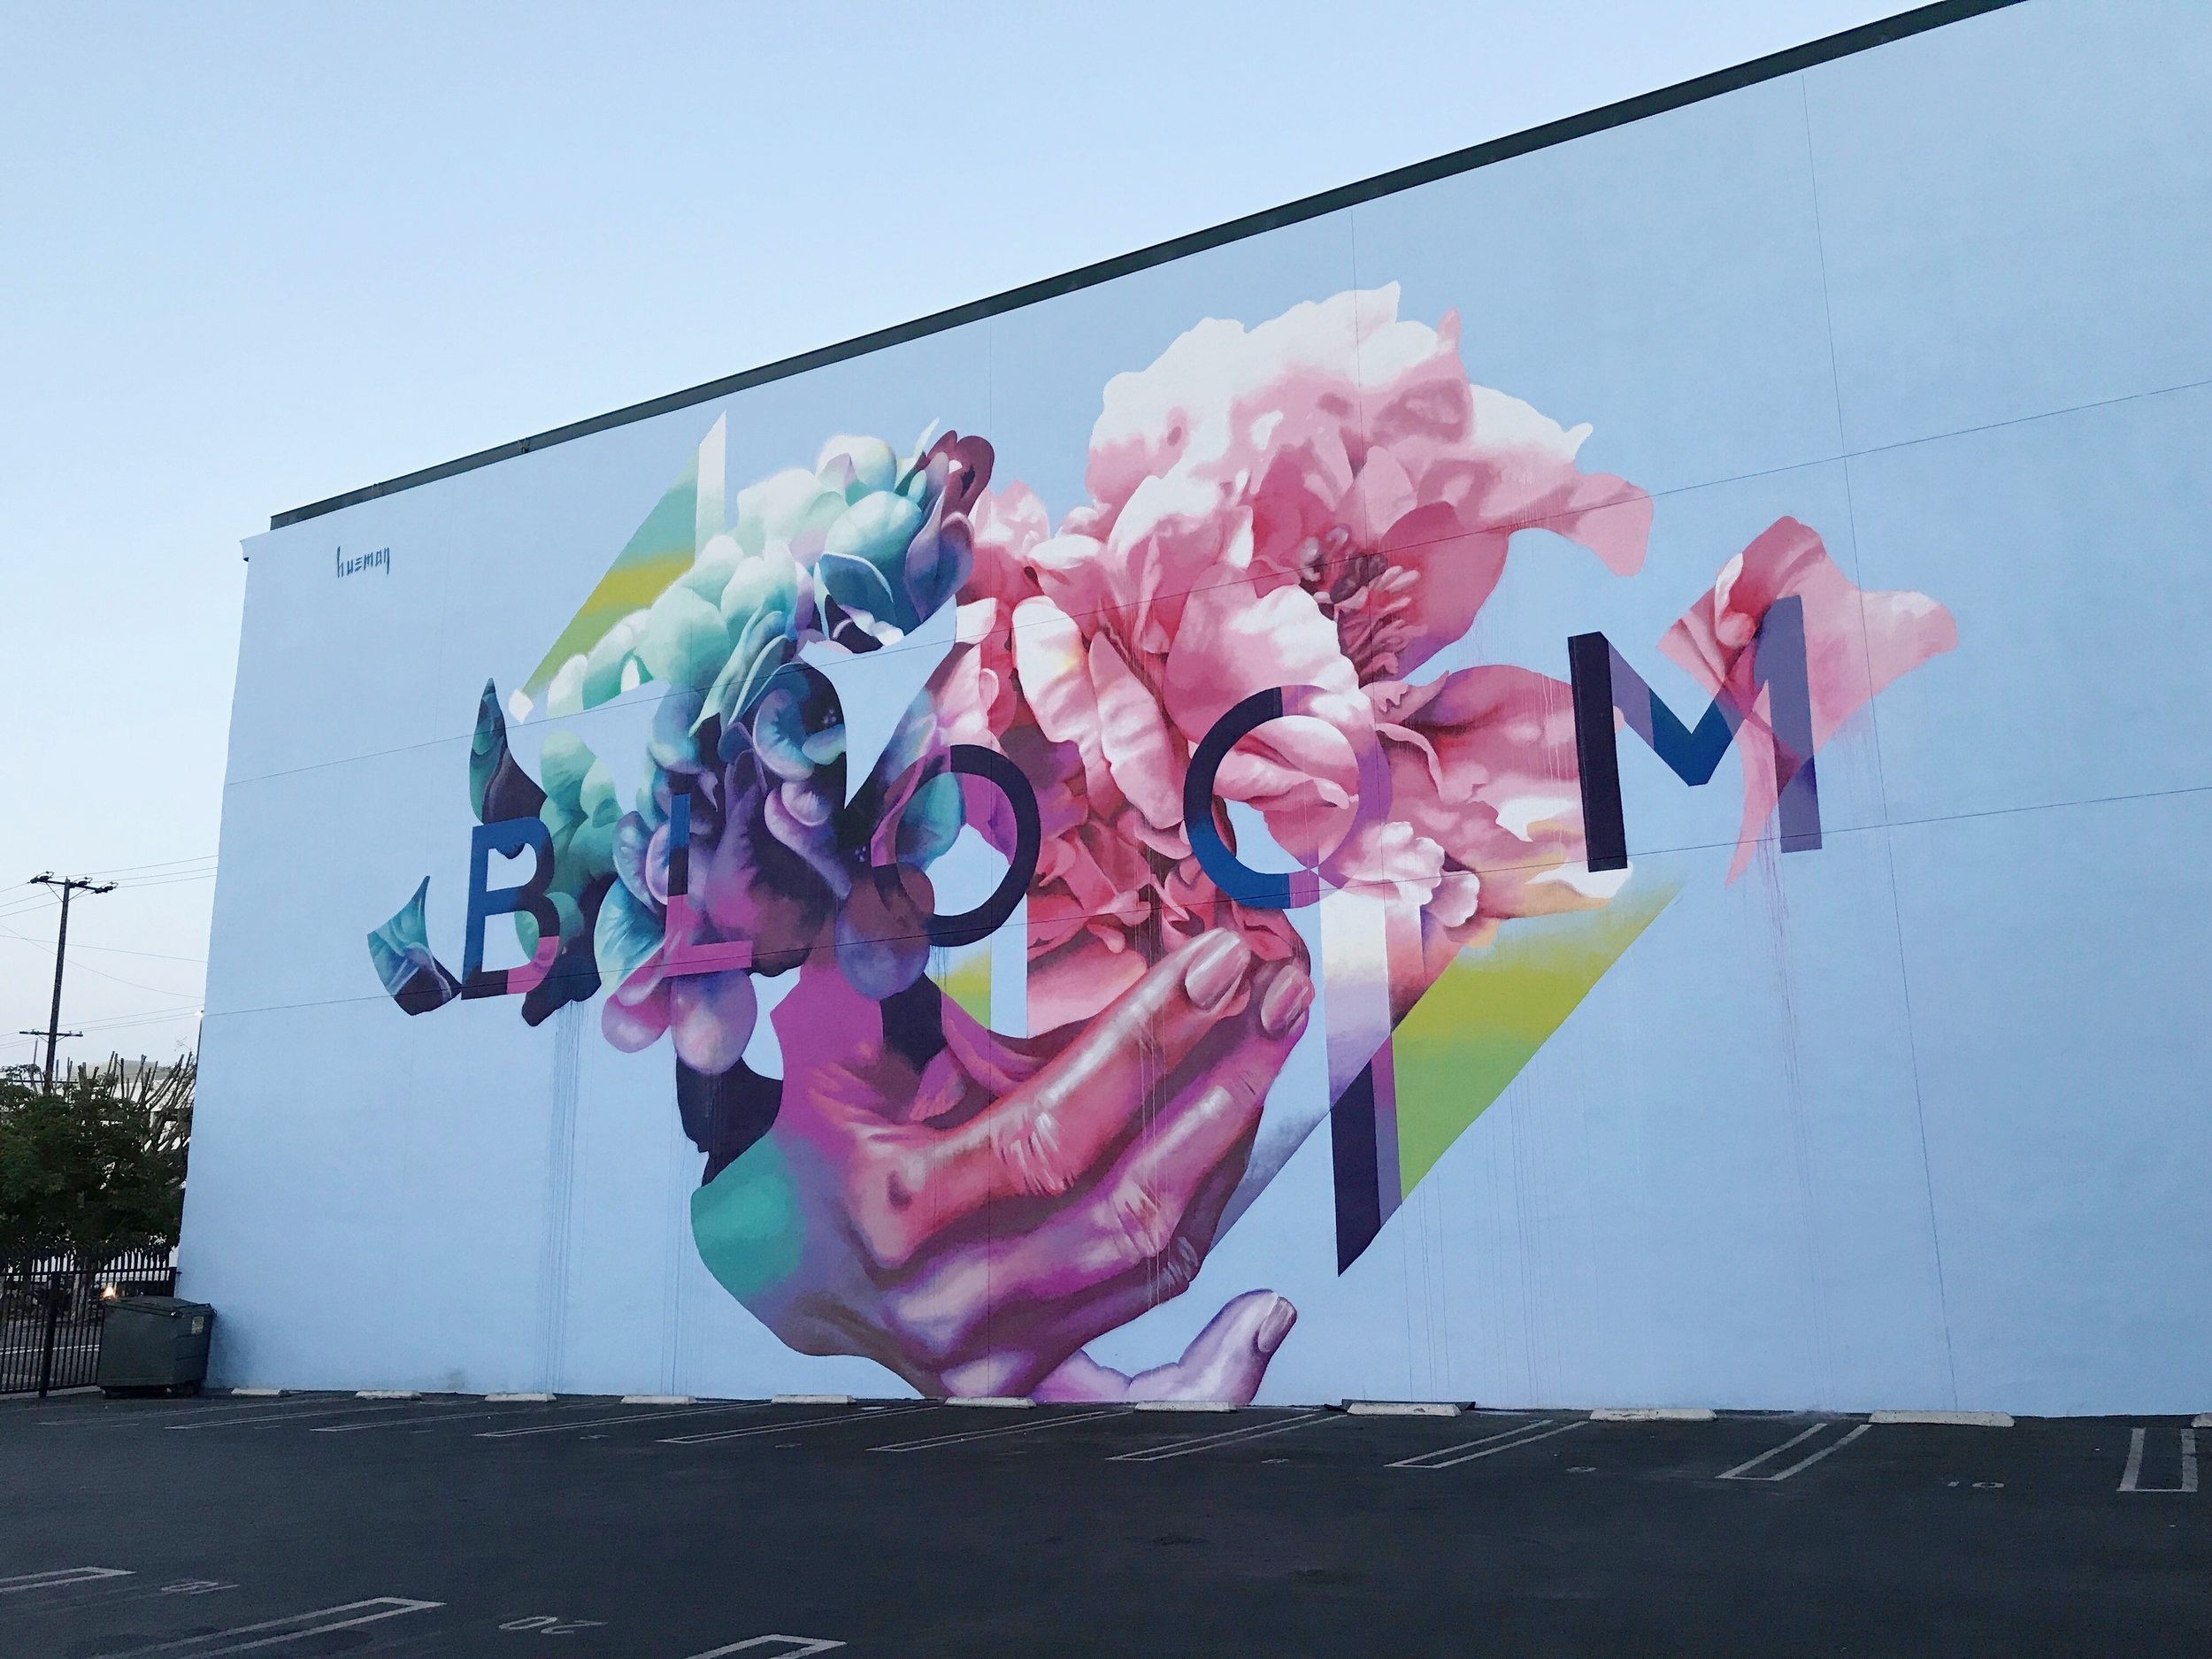 Street Art called Bloom by Hueman in Arts District of Los Angeles